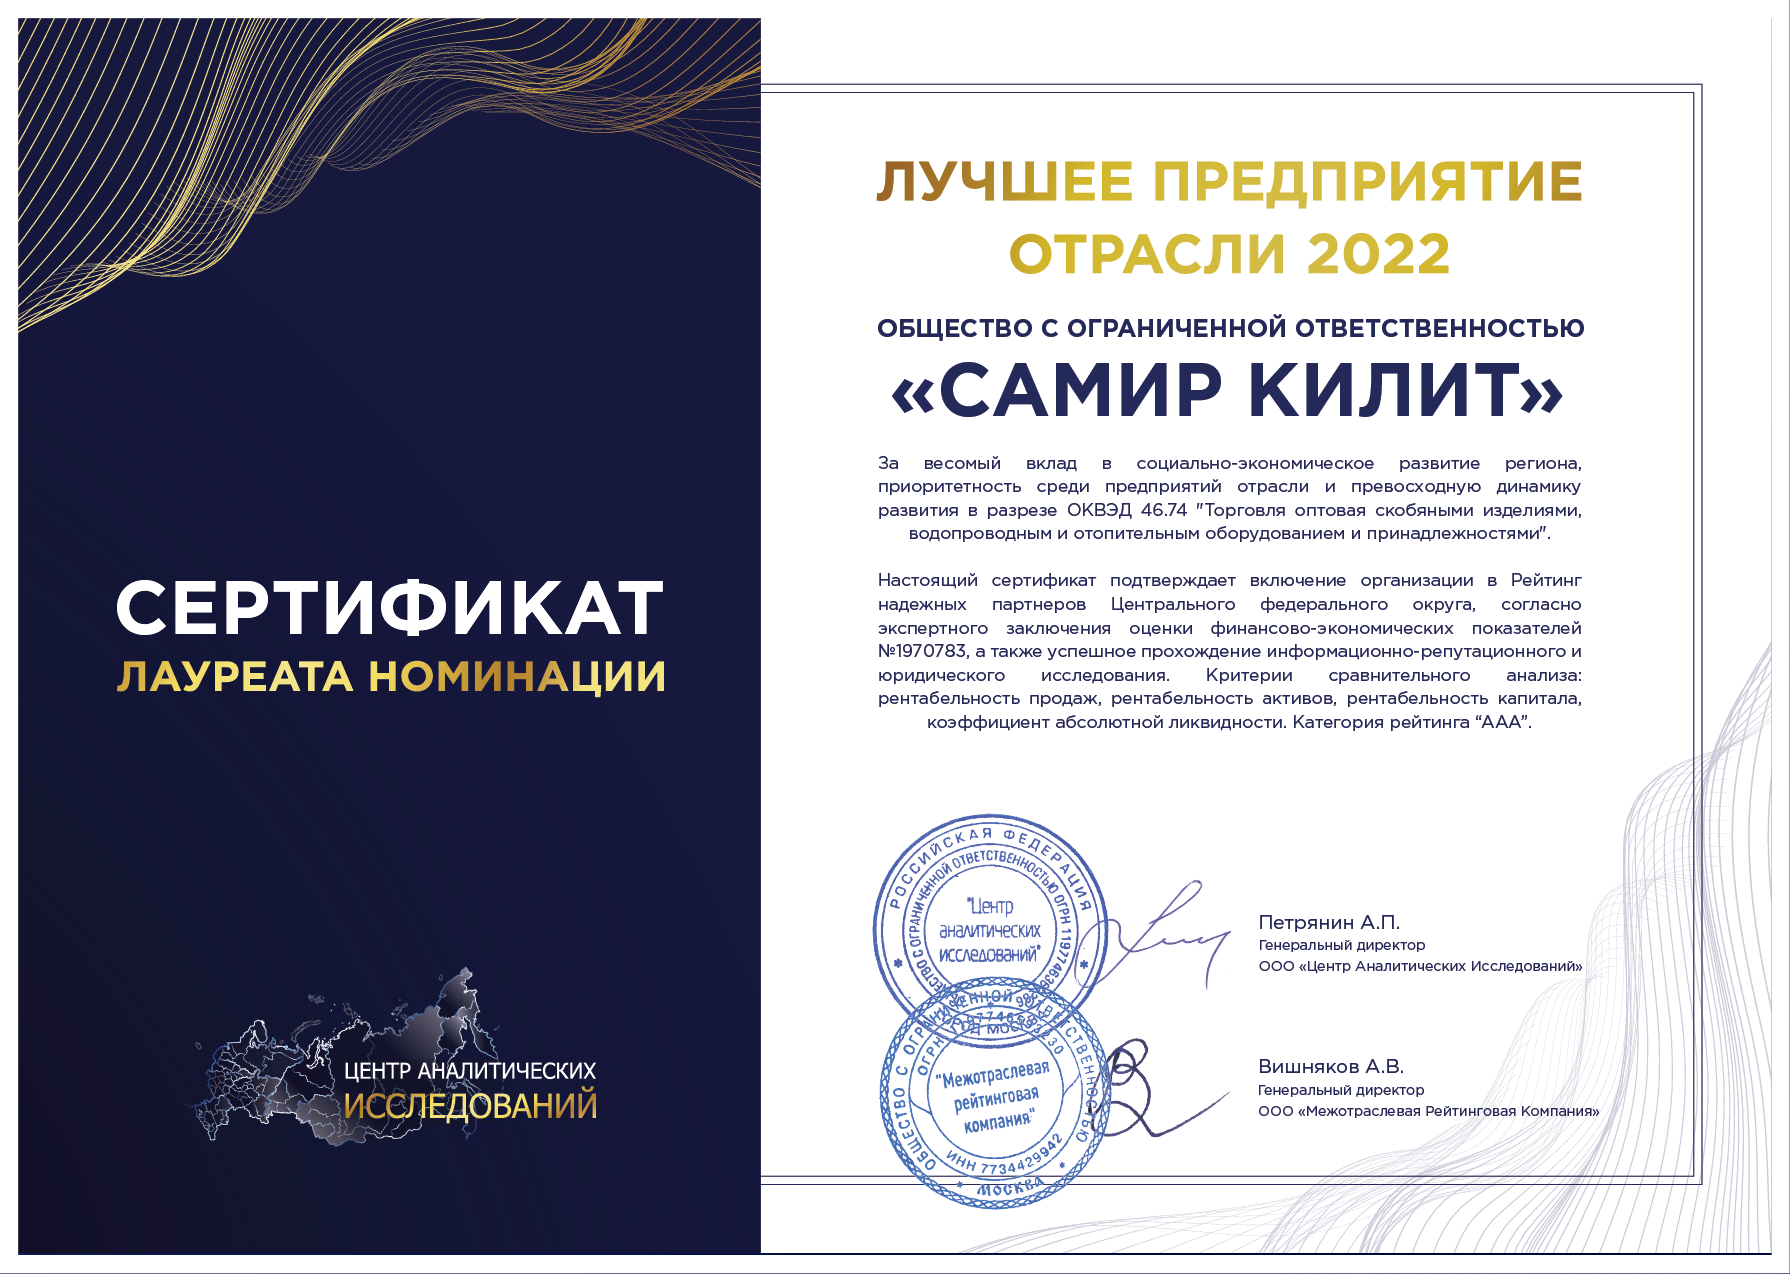 Сертификат лучшее предприятие России 2022